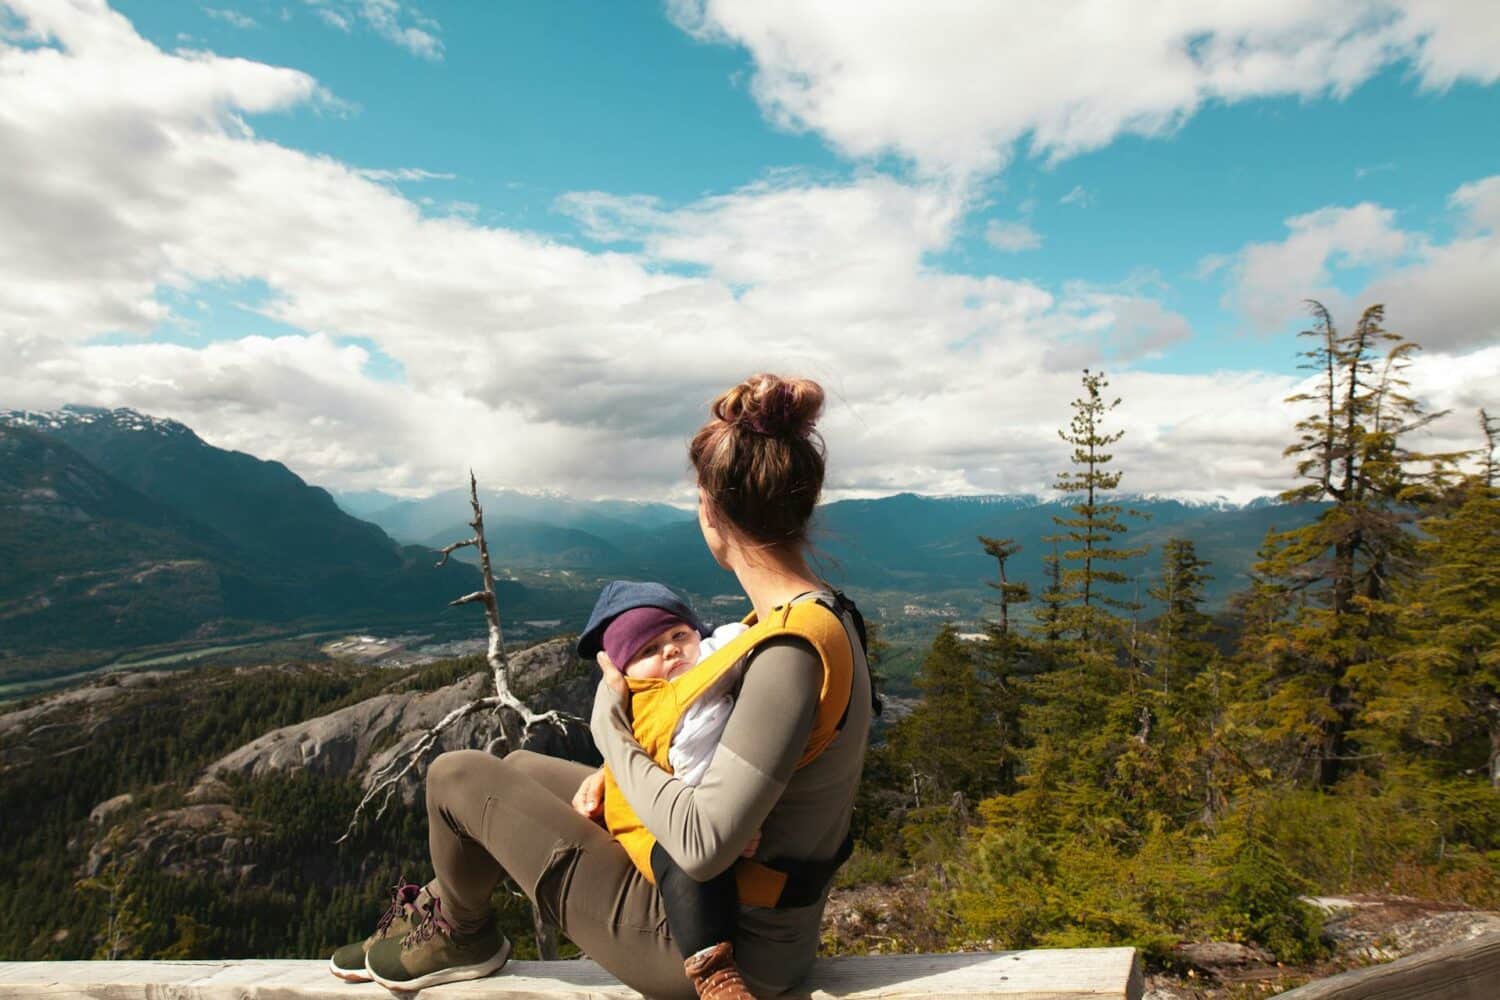 Uma mulher sentada observando montanhas, com muitas árvores ao seu redor, em seu colo está um bebê sendo segurado pelos dois braços da mulher, para representar seguro viagem bebê